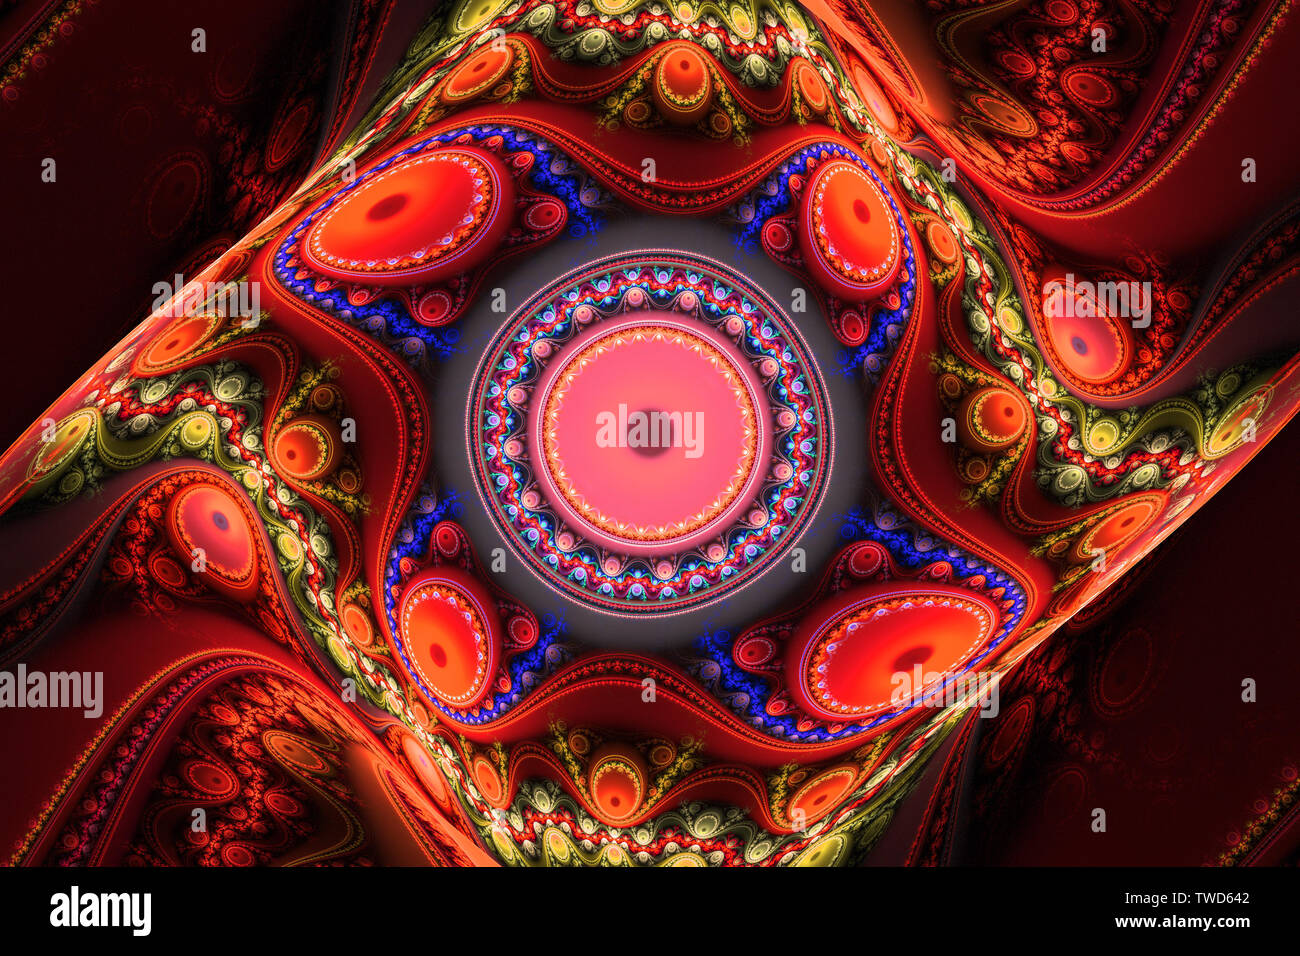 La magie de la musique hypnotique Hypnose rêve rêve fractal wallpaper abstract background. Rêves Banque D'Images